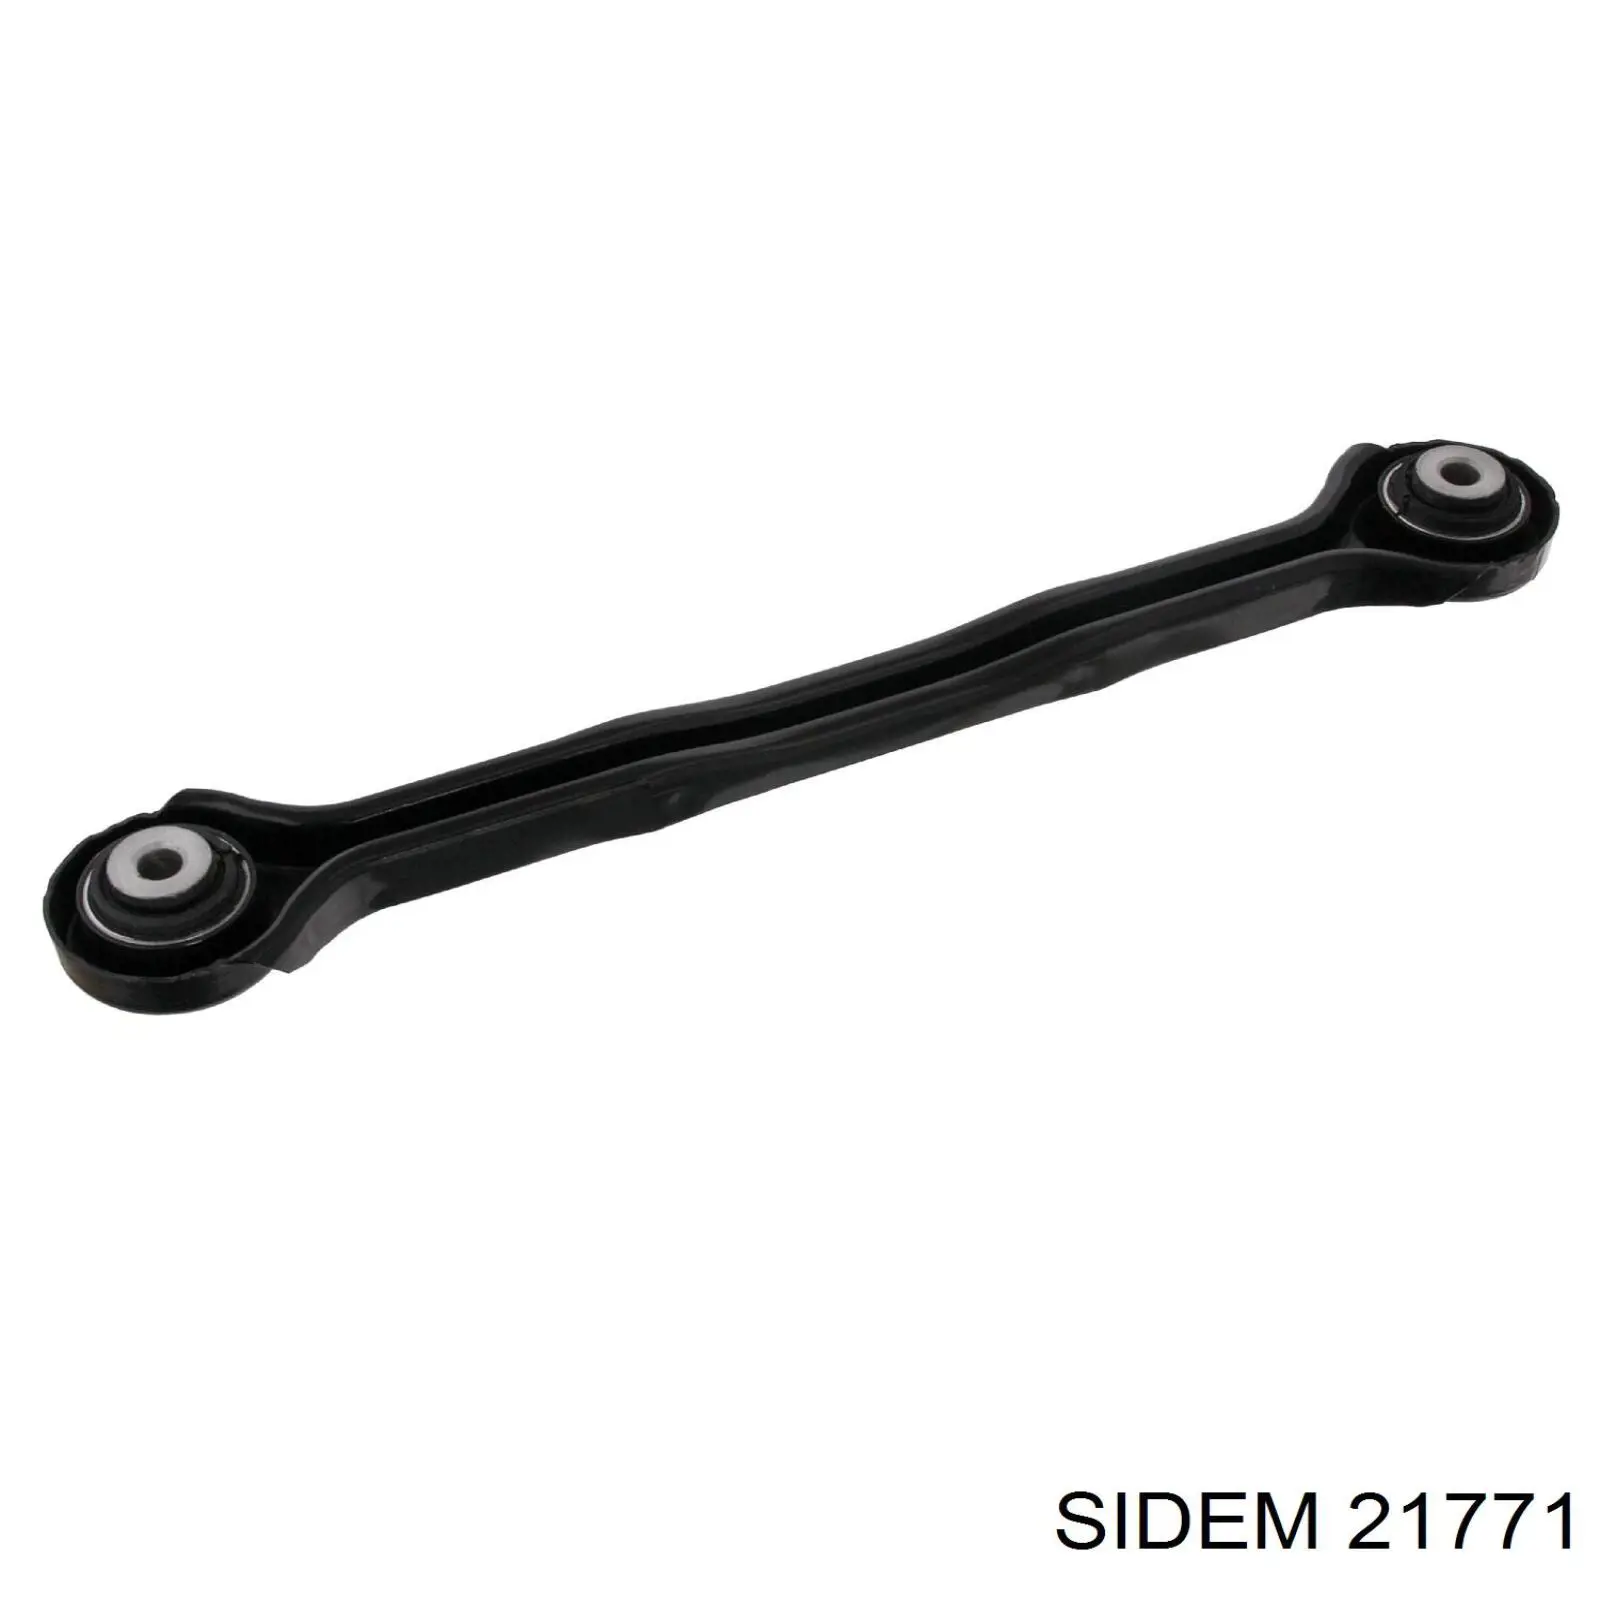 21771 Sidem kit para brazo suspension trasera